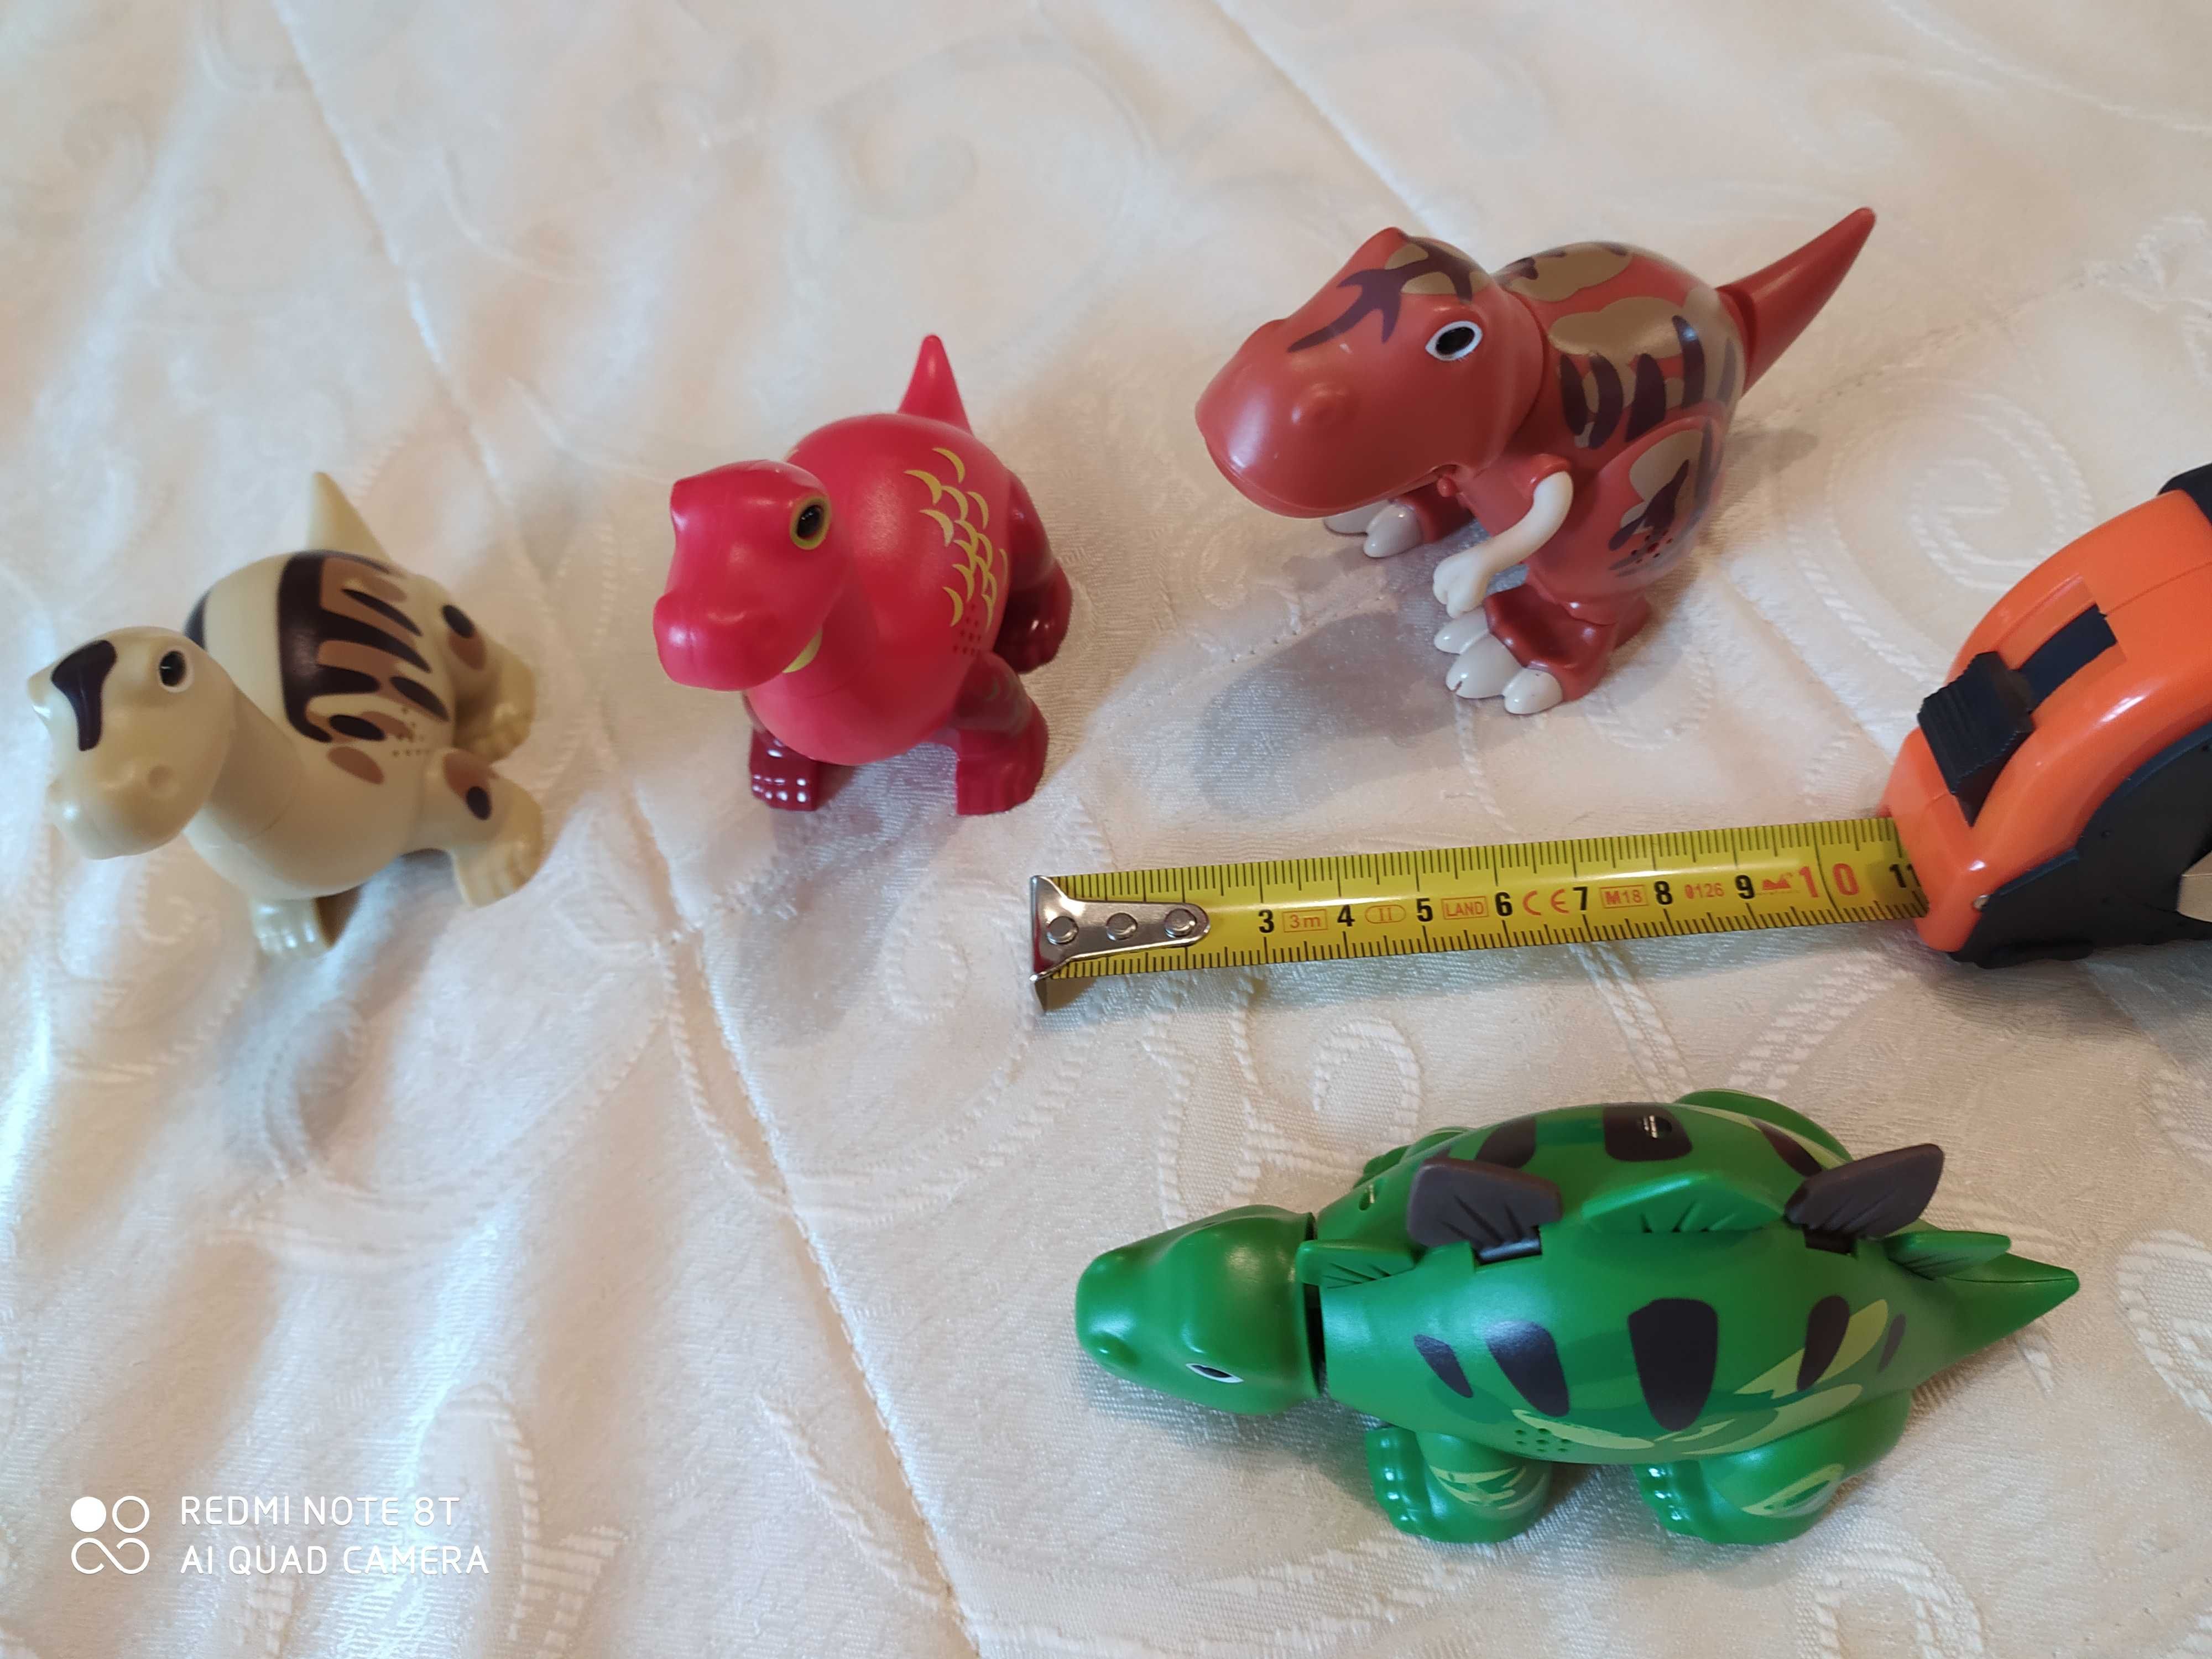 Dino family toys